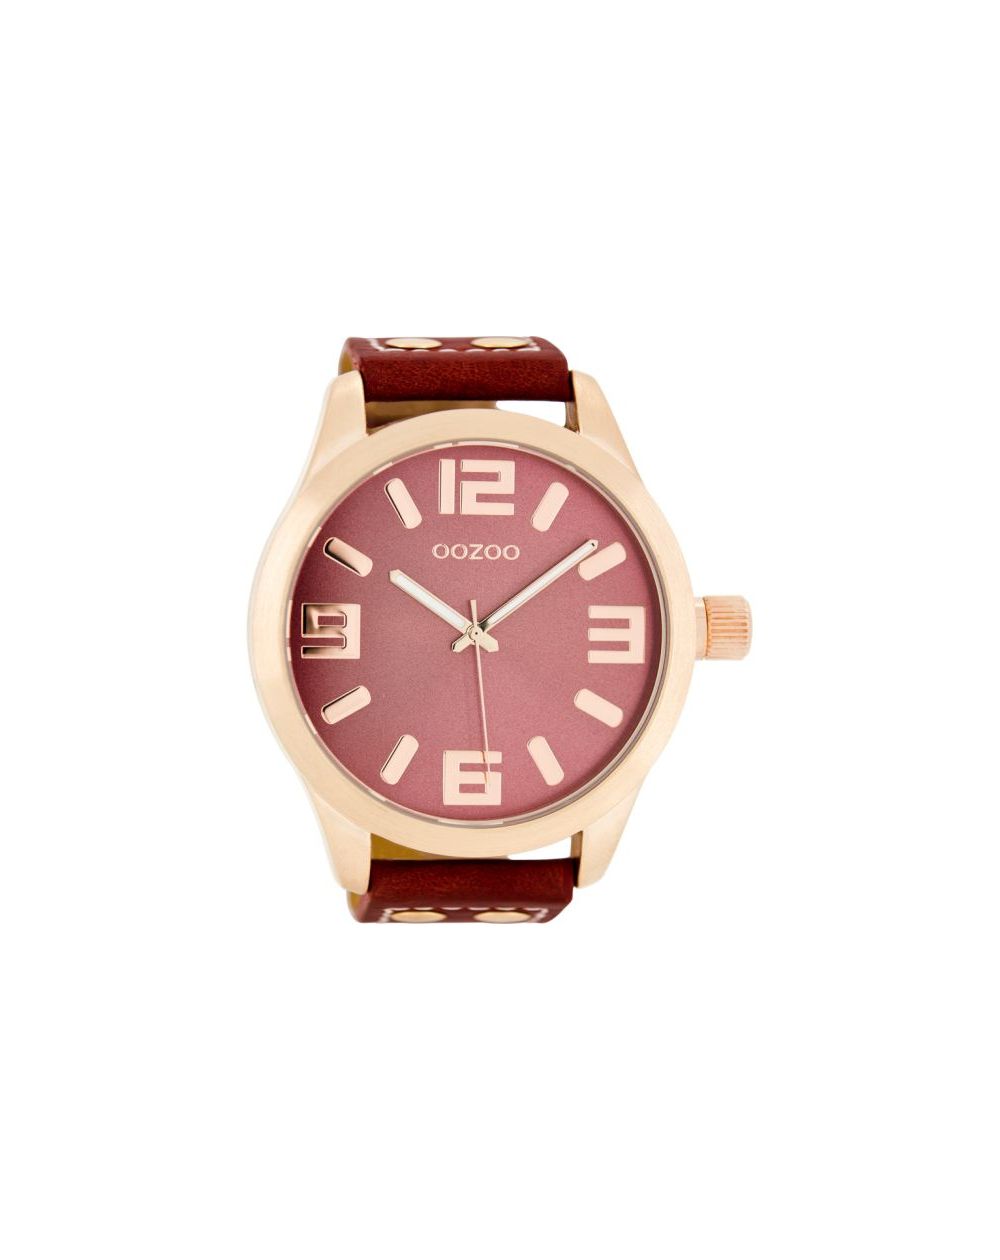 Oozoo montre/watch/horloge C1105